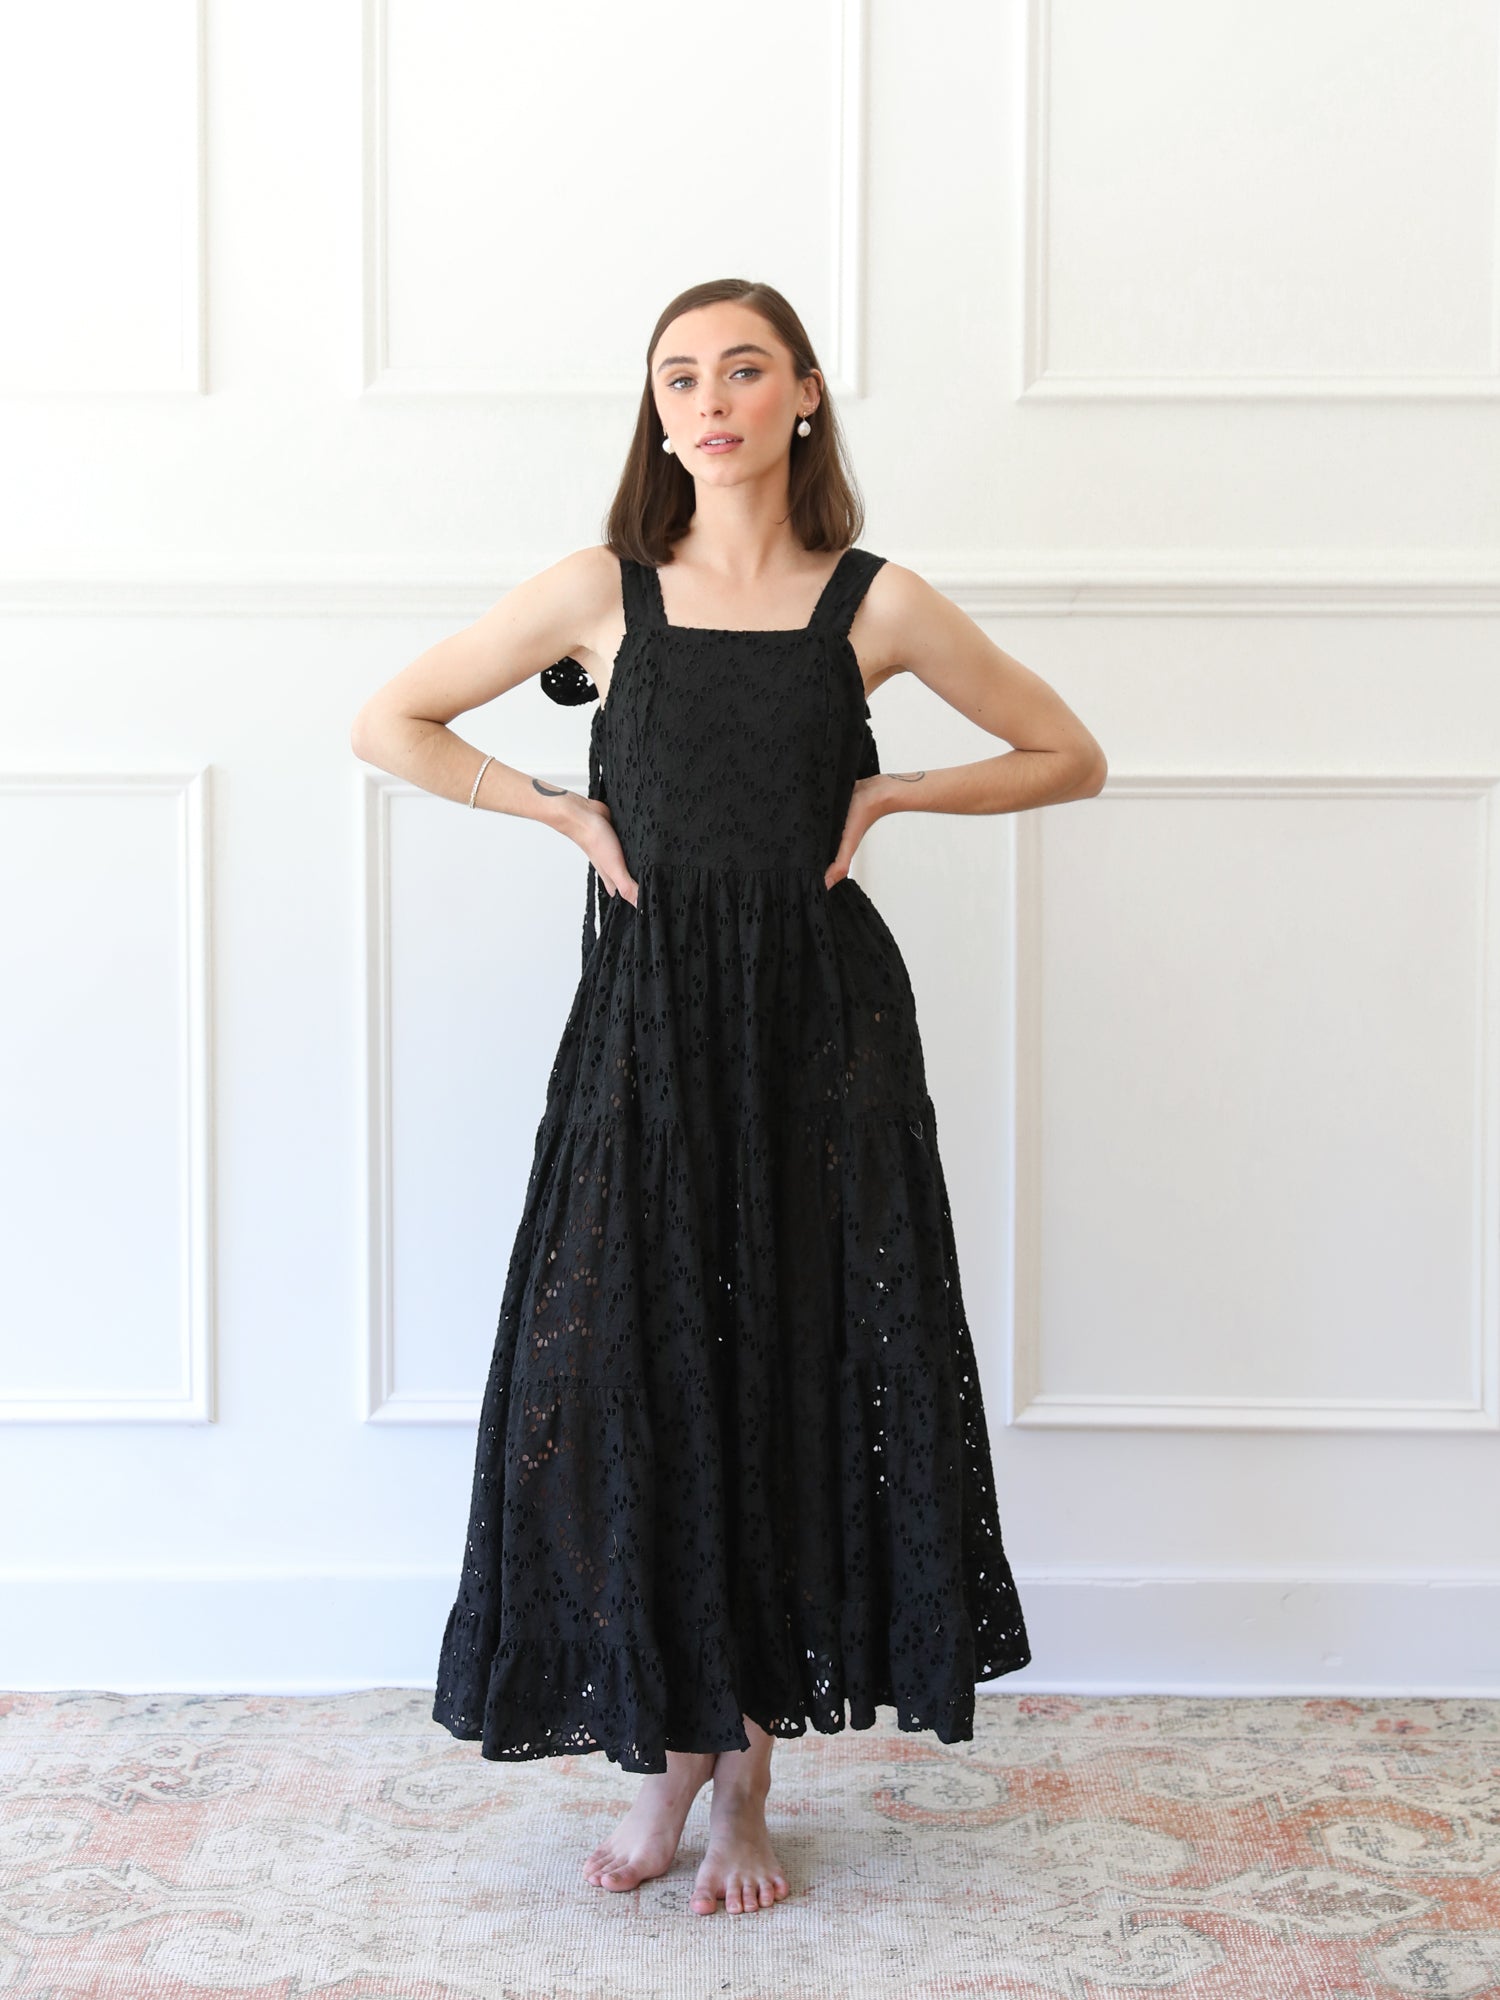 MILLE Clothing Daphne Dress in Black Floral Eyelet